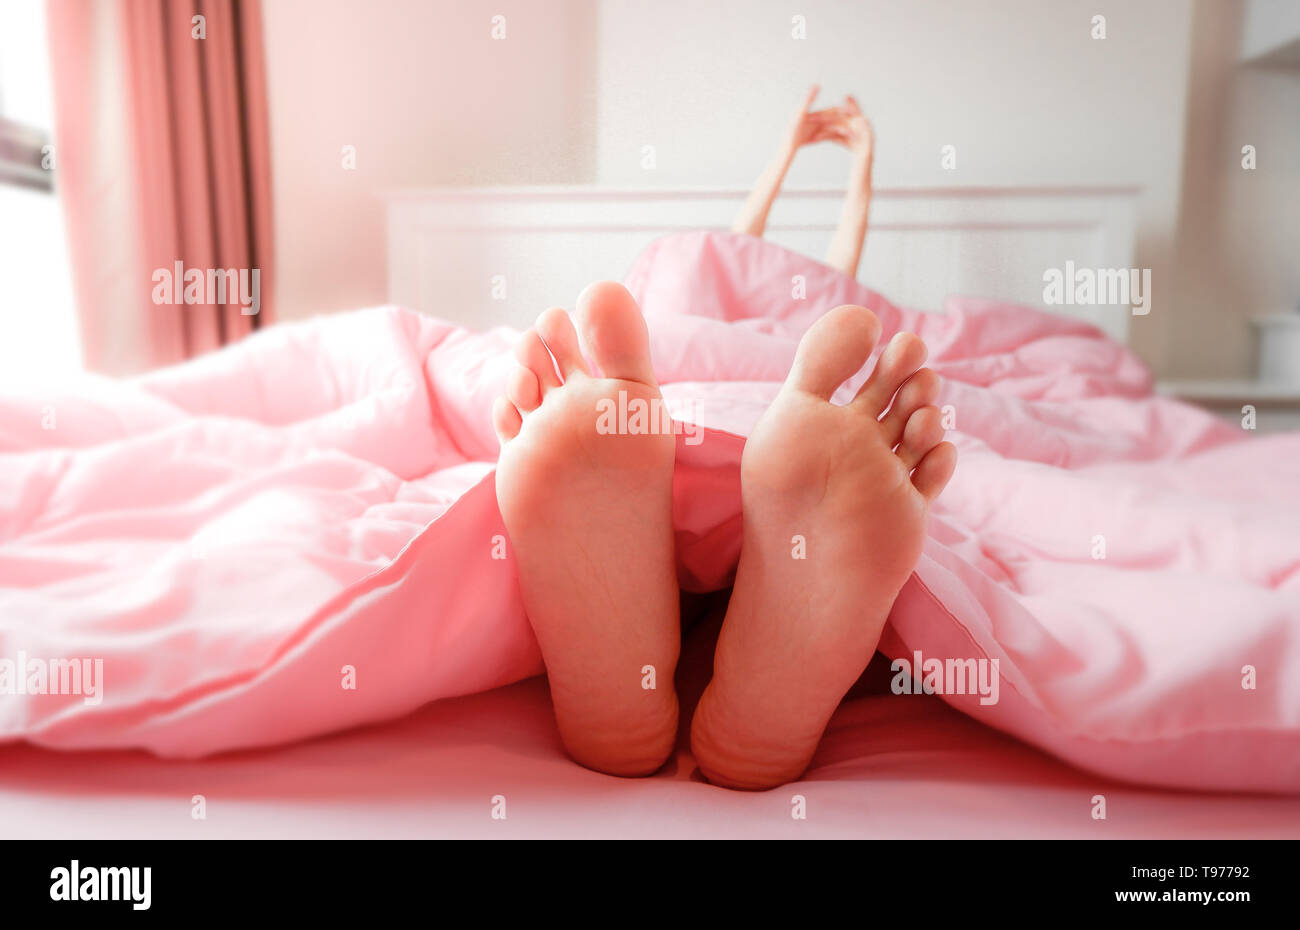 Fuß in Bett zu Hause, Schlafen & Entspannen. Zwei Füße auf dem Bett in rosa  Bettwäsche. Schöne junge Frau Barfuß im Schlafzimmer Hintergrund. Weibliche  Füße Stockfotografie - Alamy